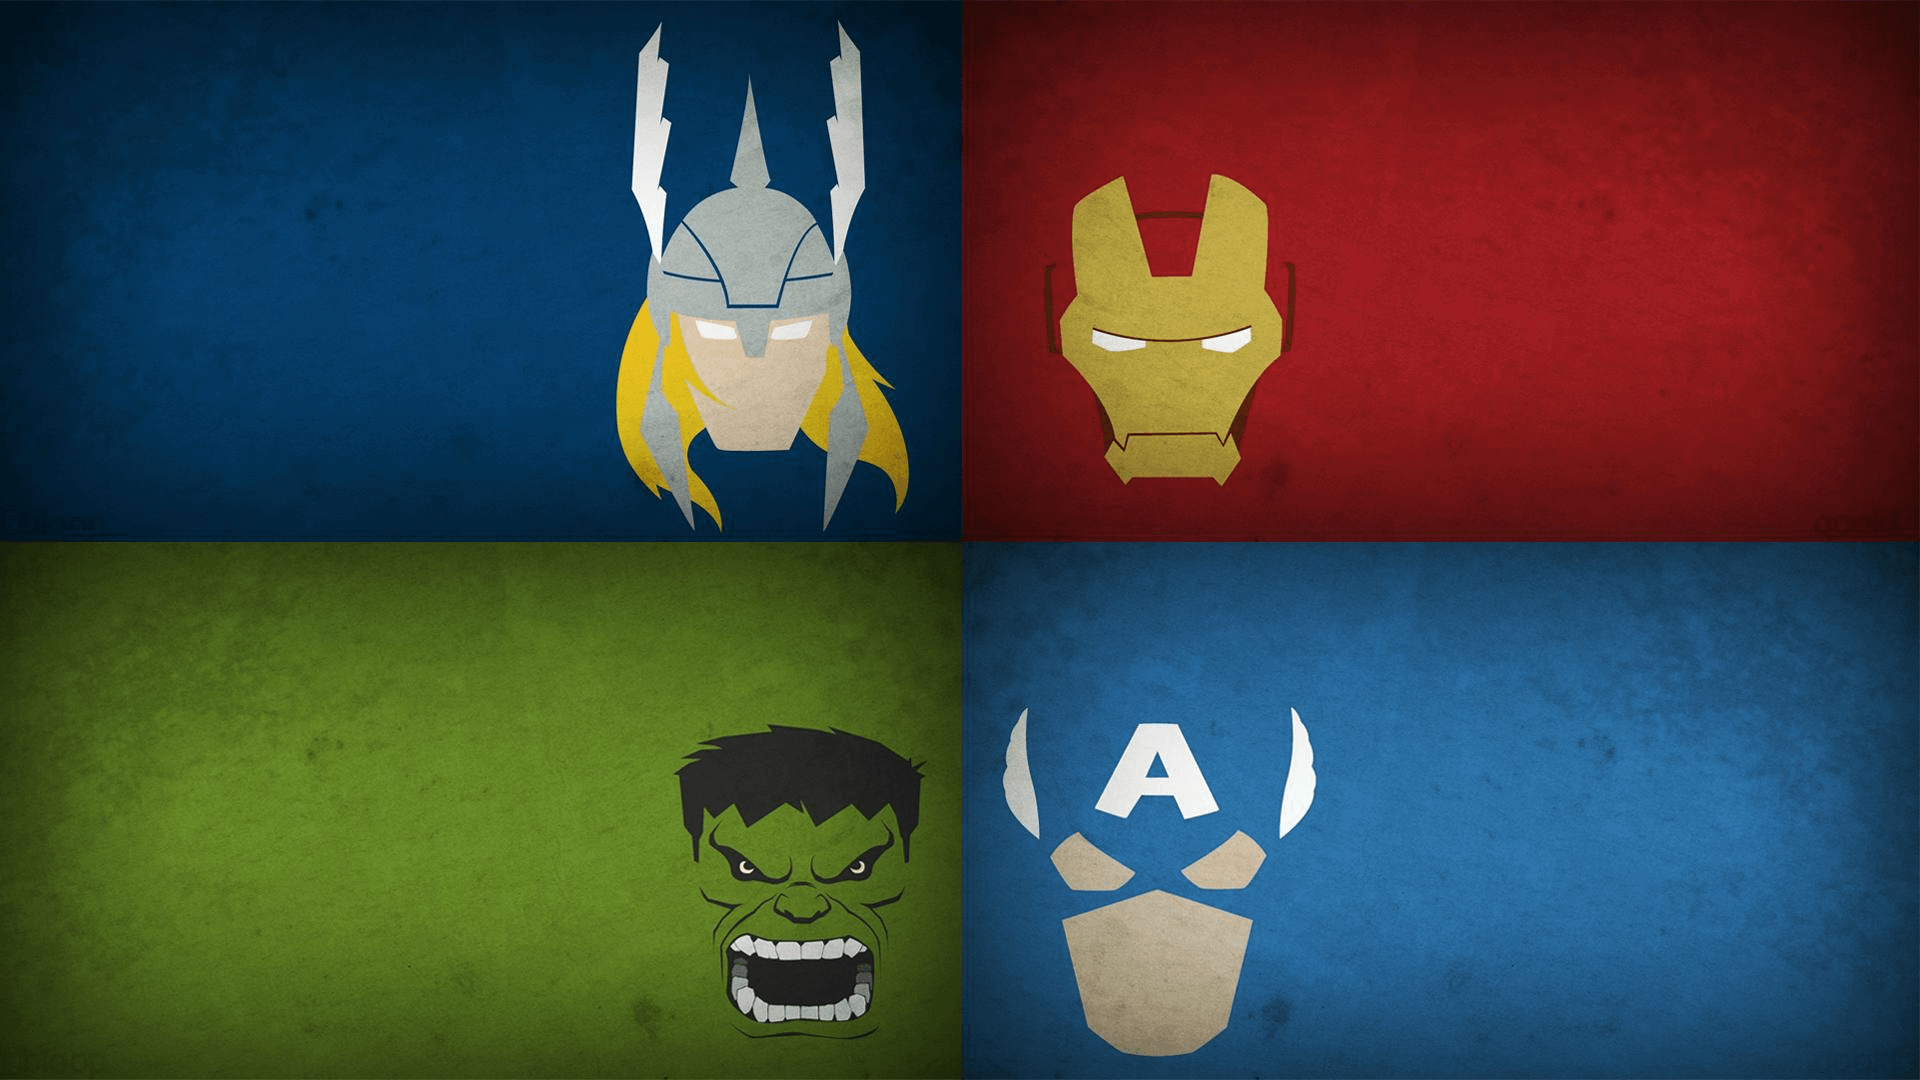 Thor Face Logo - Logo Avengers Wallpapers | PixelsTalk.Net